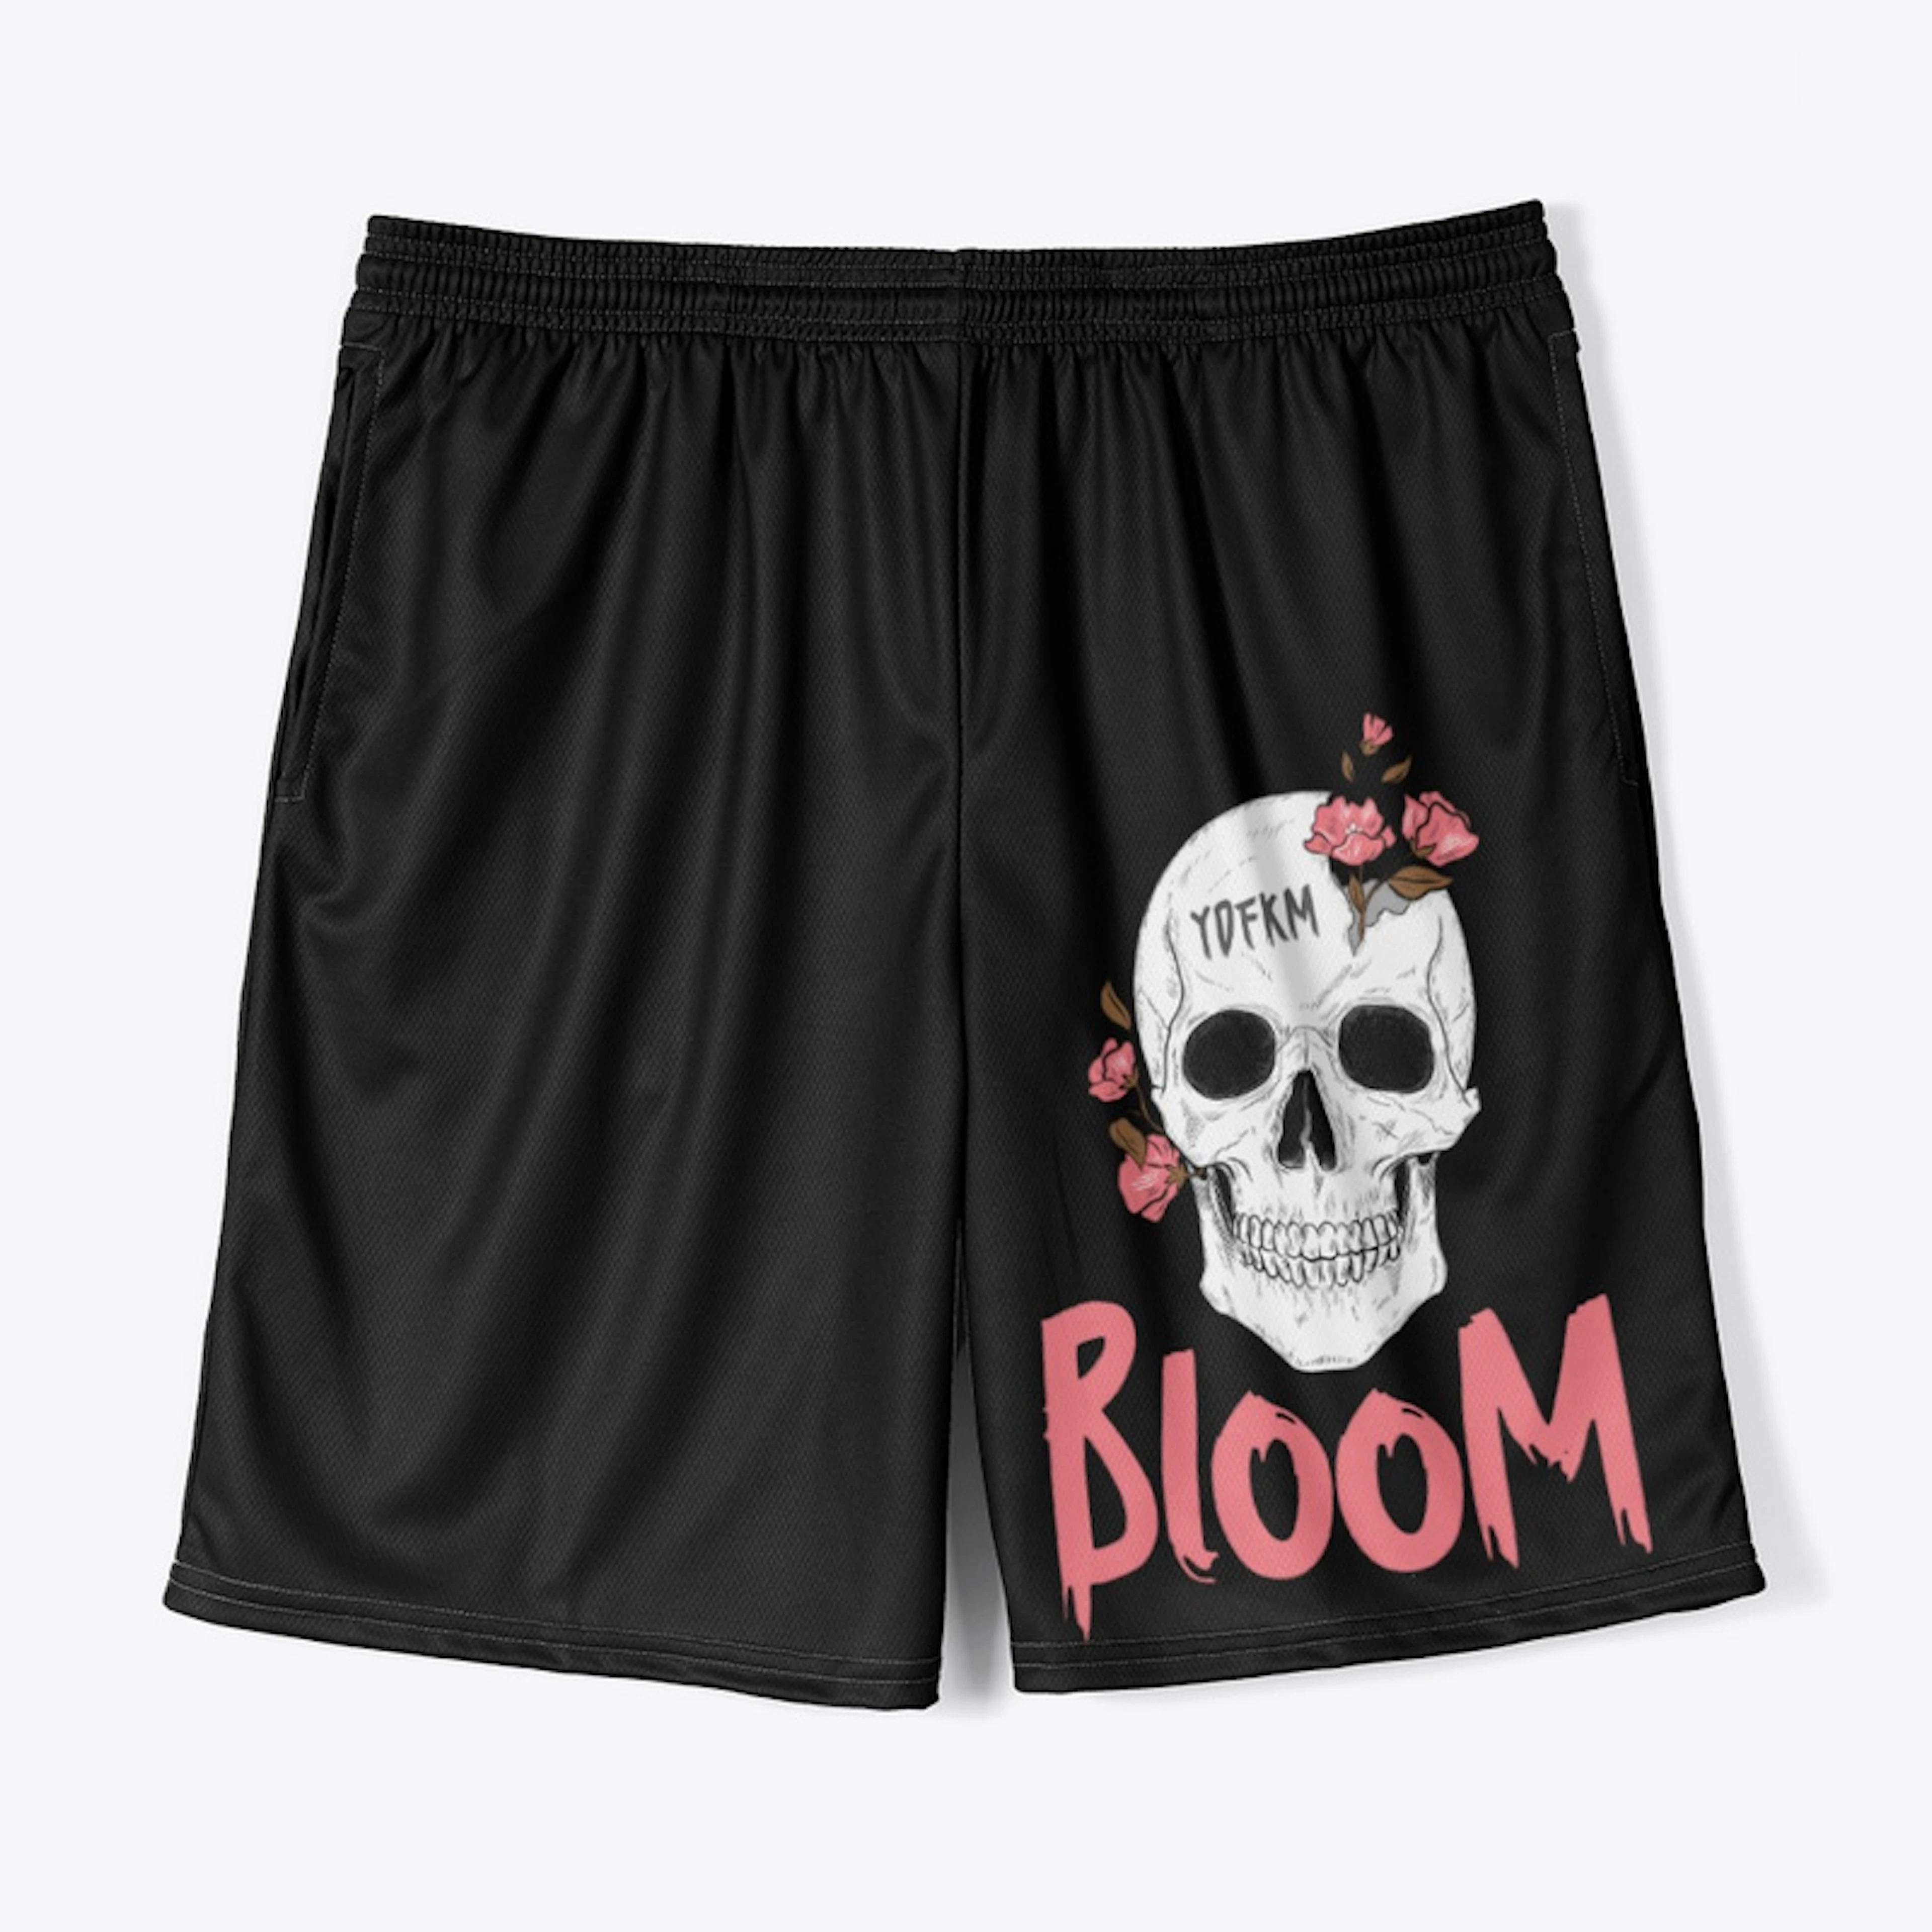 Bloom skull jersey shorts 